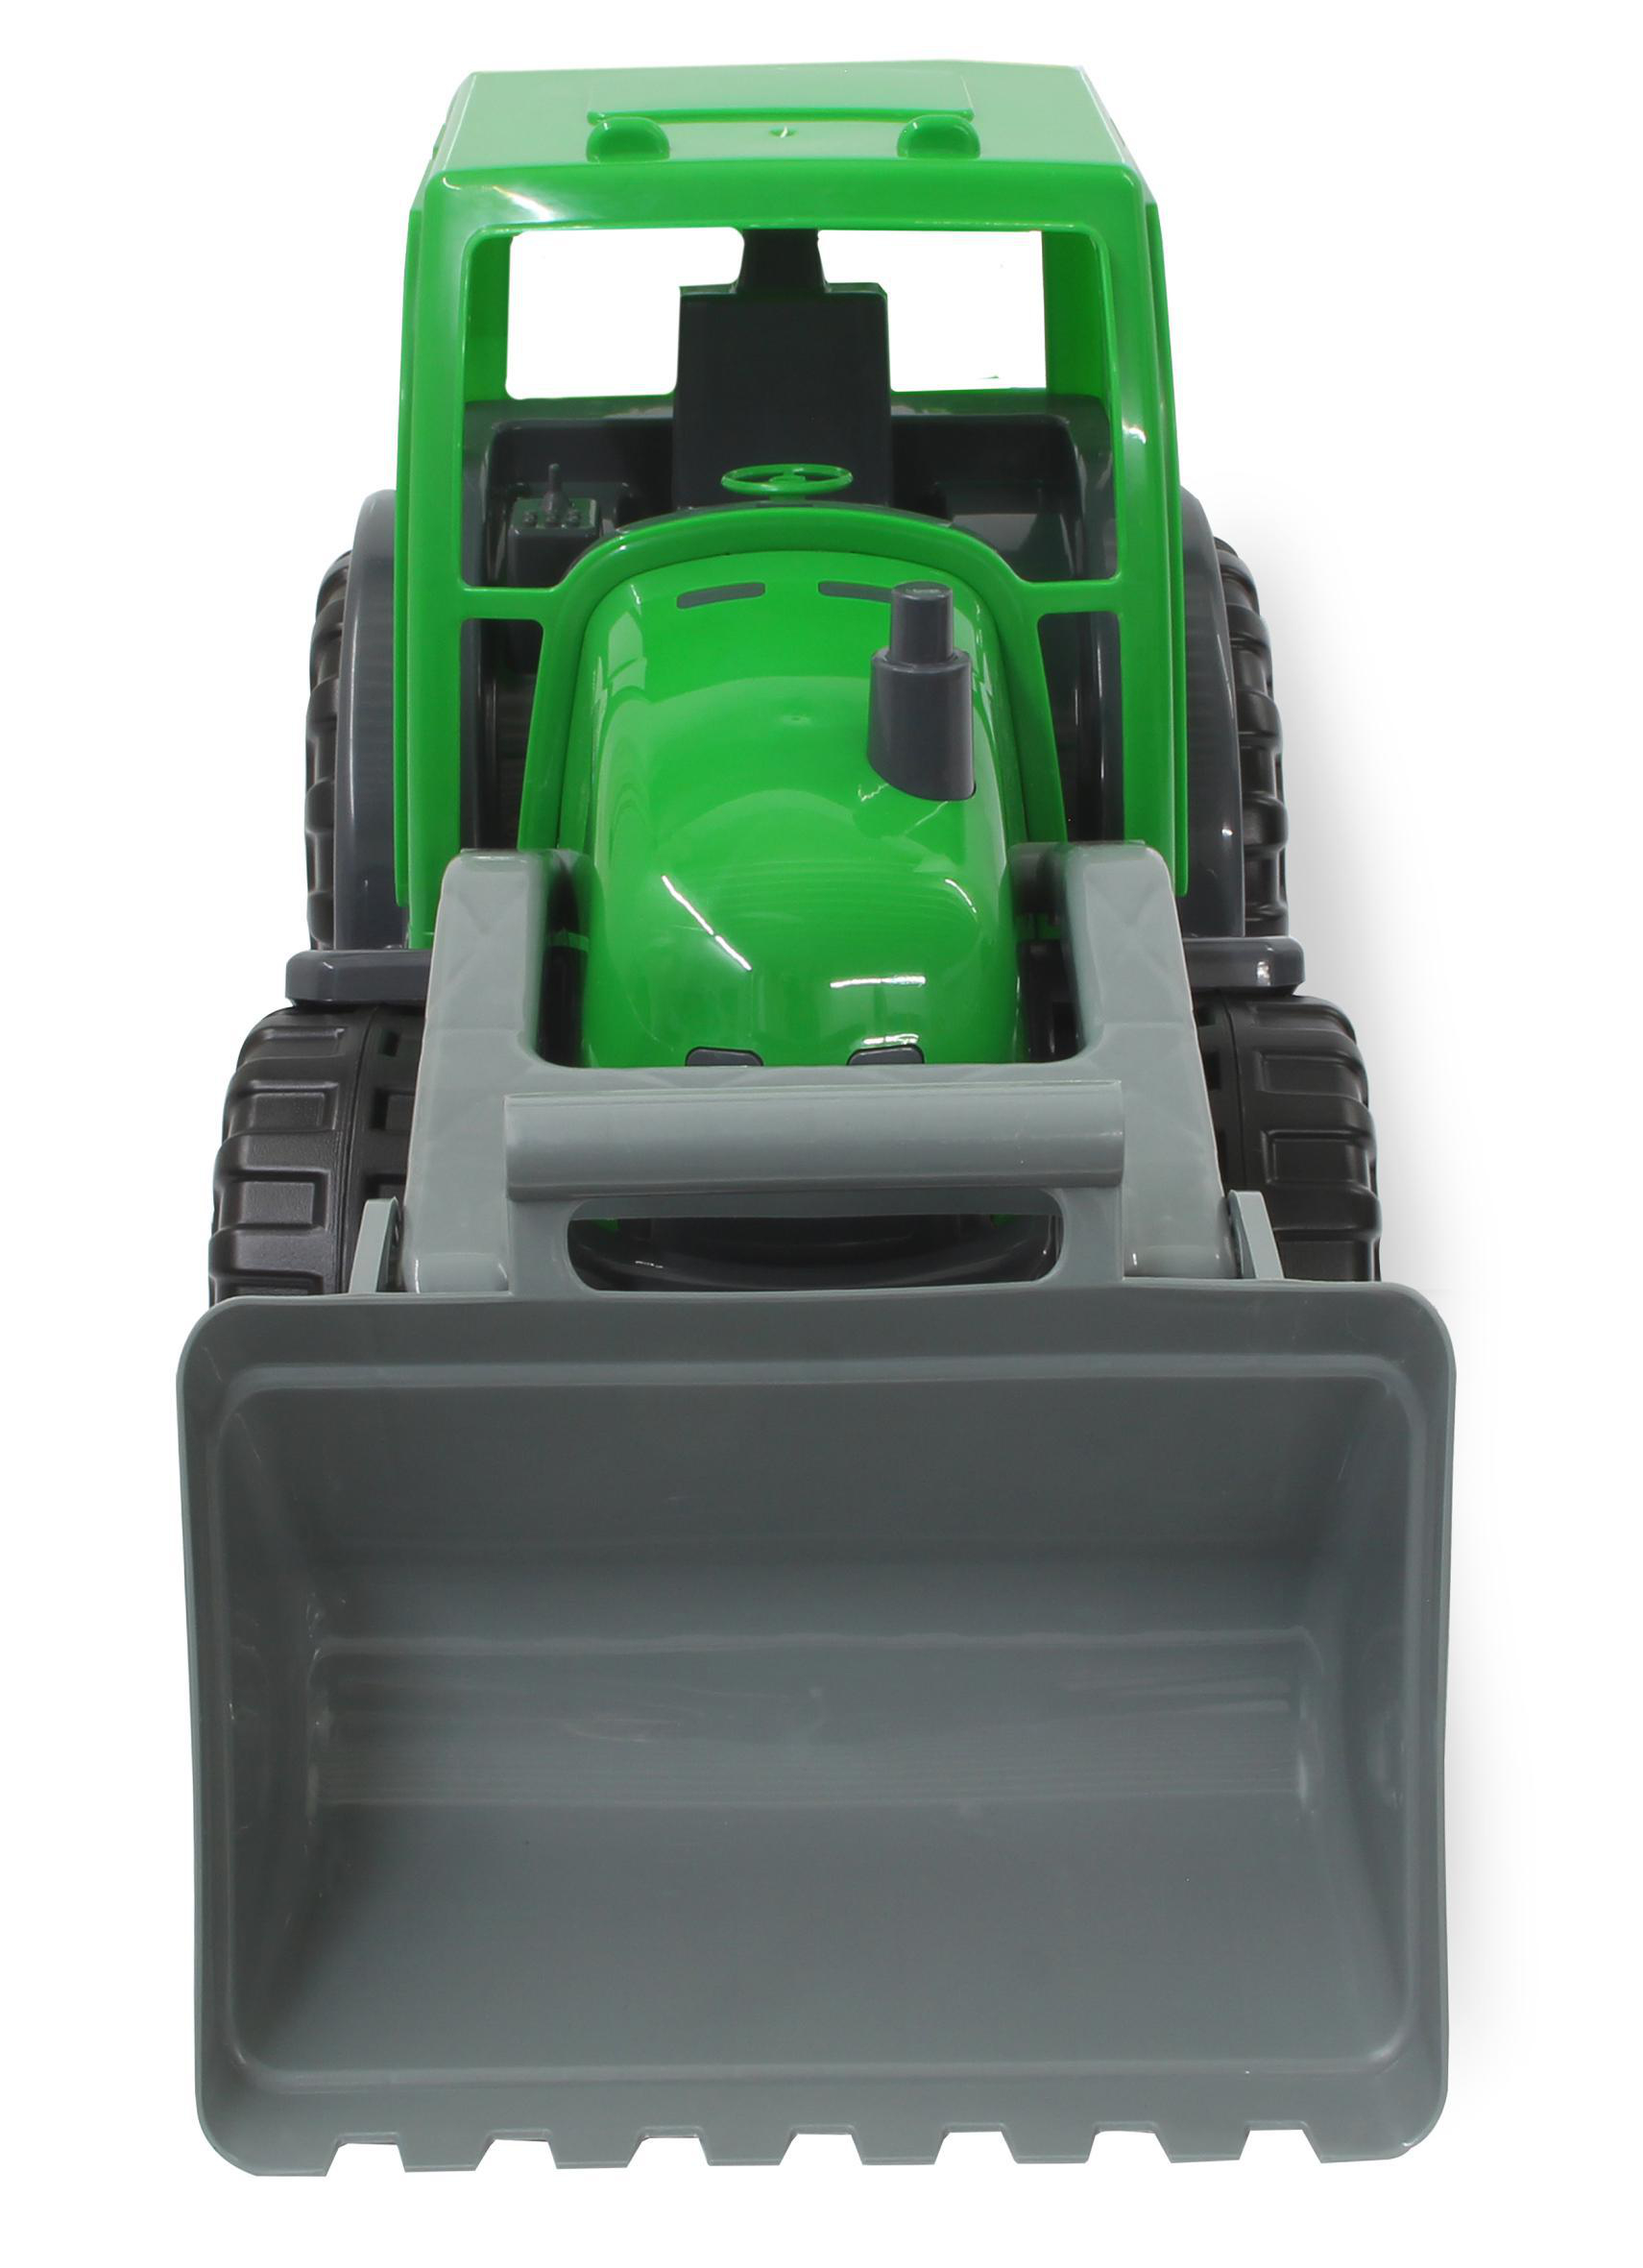 JAMARA Traktor Frontlader Power mit XL Loader Grün Spielzeugfahrzeug